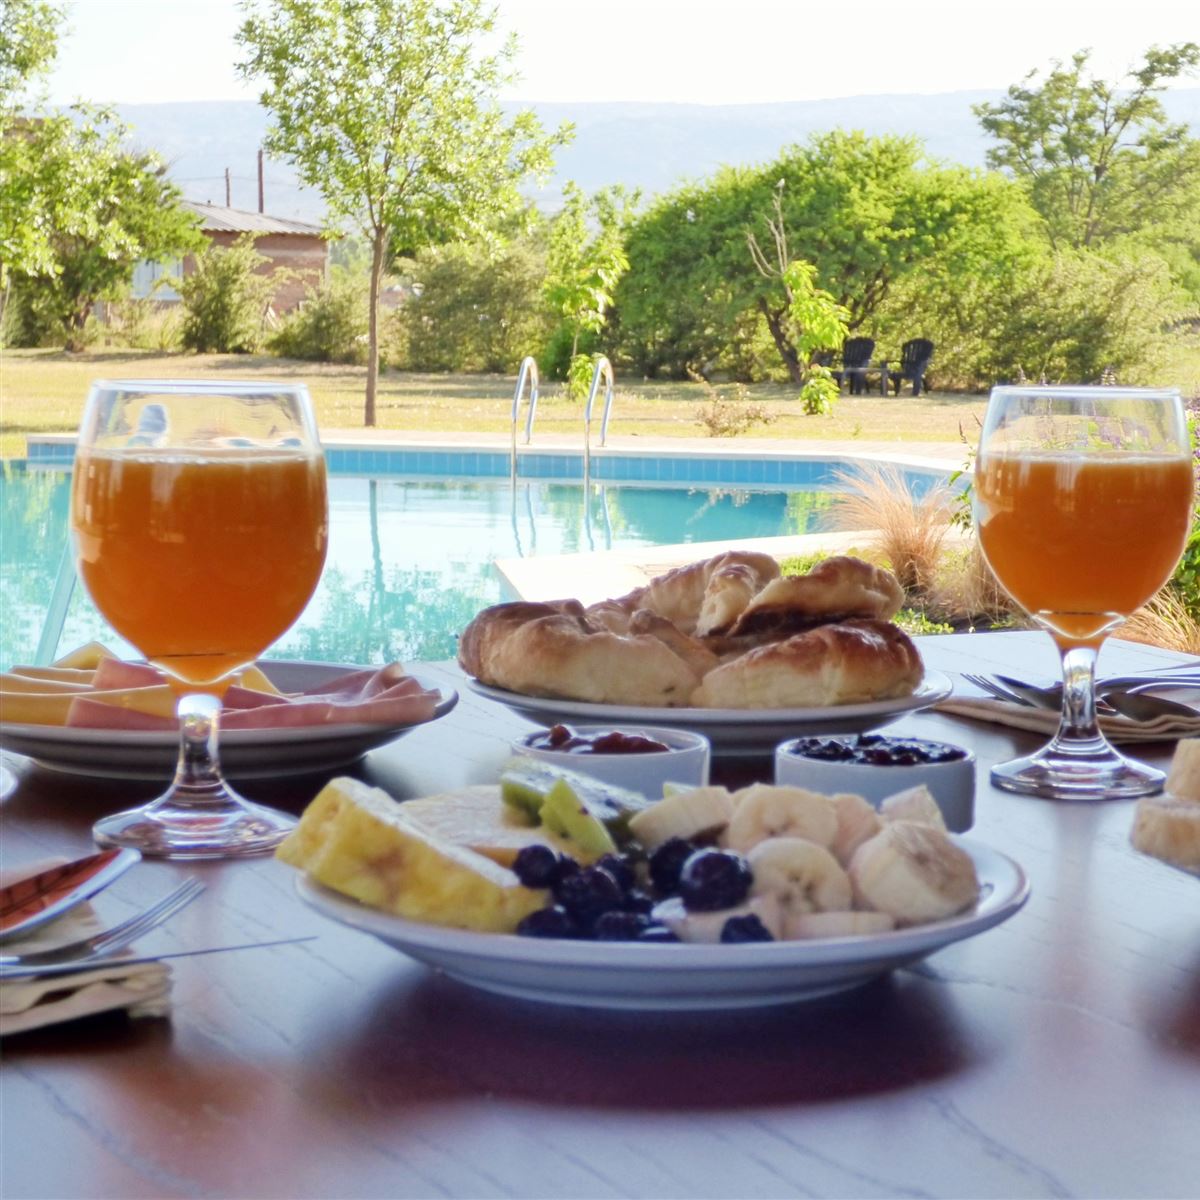 Desayuno continental junto a la piscina | La Rosa Apart Hotel Solo Parejas - Mina Clavero - Traslasierra